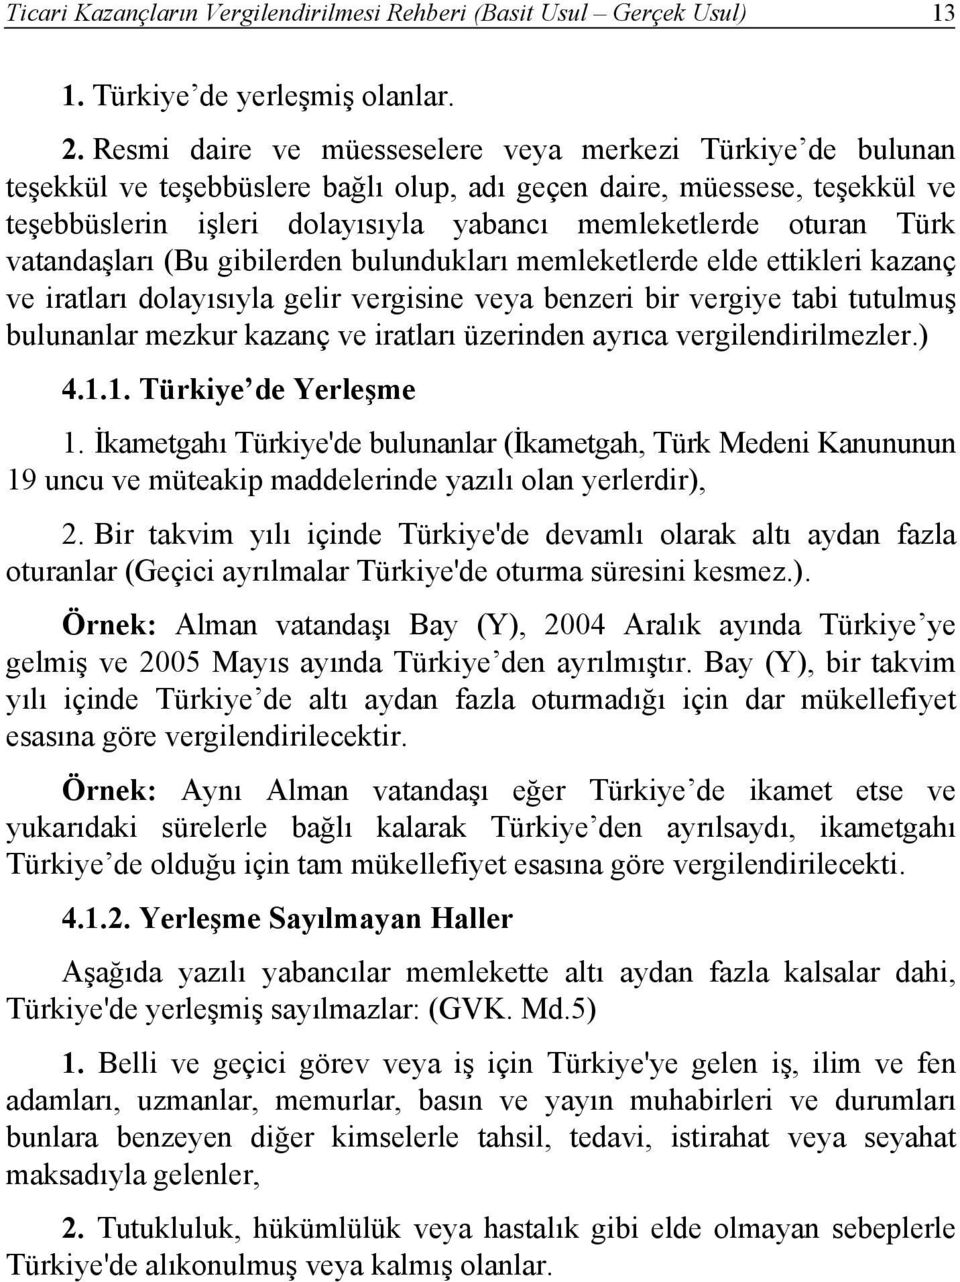 Türk vatandaşları (Bu gibilerden bulundukları memleketlerde elde ettikleri kazanç ve iratları dolayısıyla gelir vergisine veya benzeri bir vergiye tabi tutulmuş bulunanlar mezkur kazanç ve iratları